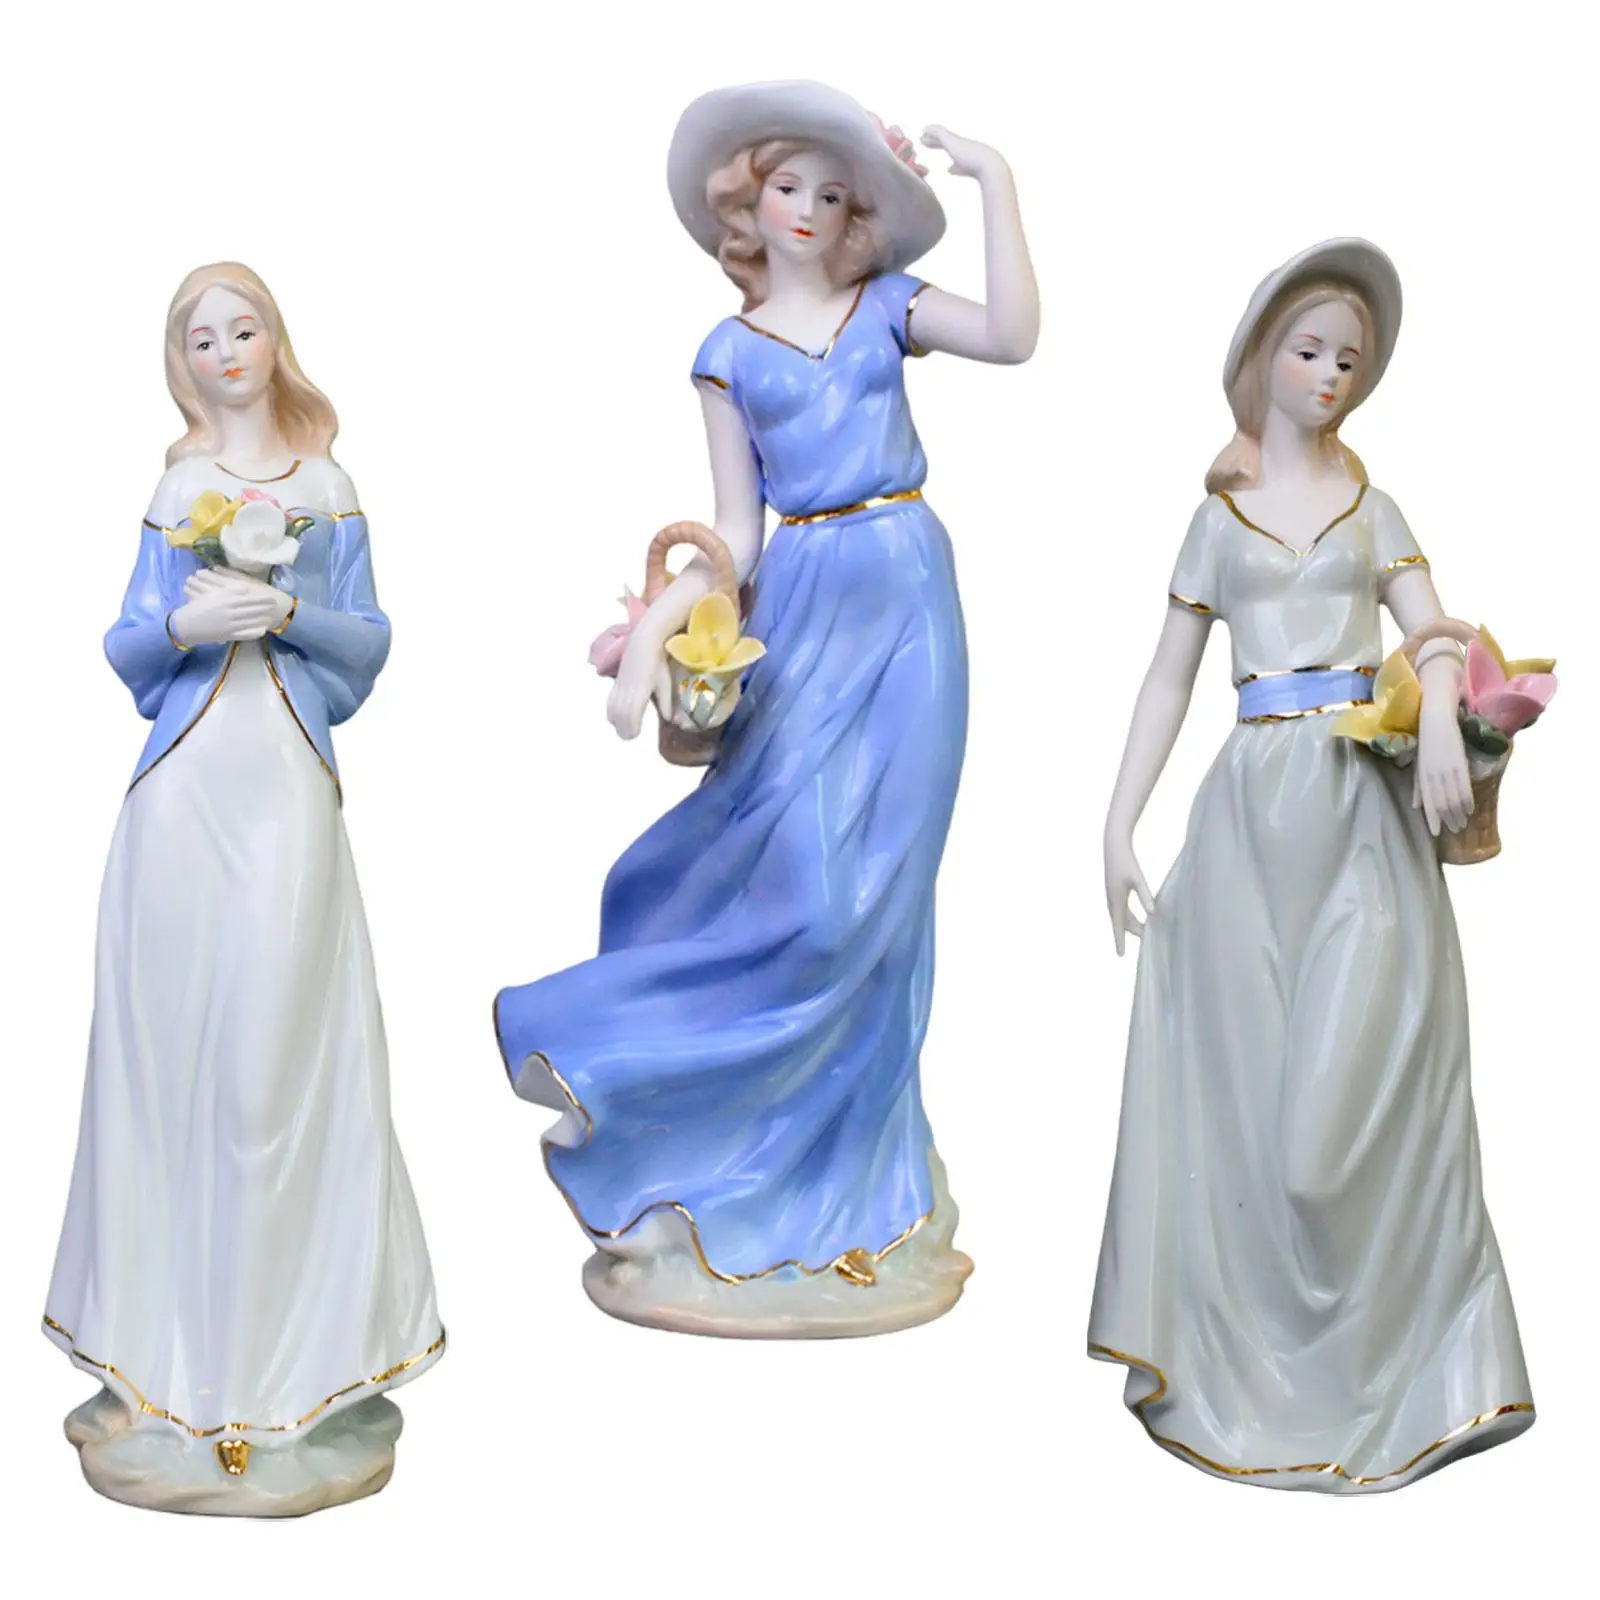 Figura de porcelana de chica, bonita figura de Arte Moderno, estatuilla decorativa de porcelana, decoración del hogar para oficina, librería de mesa